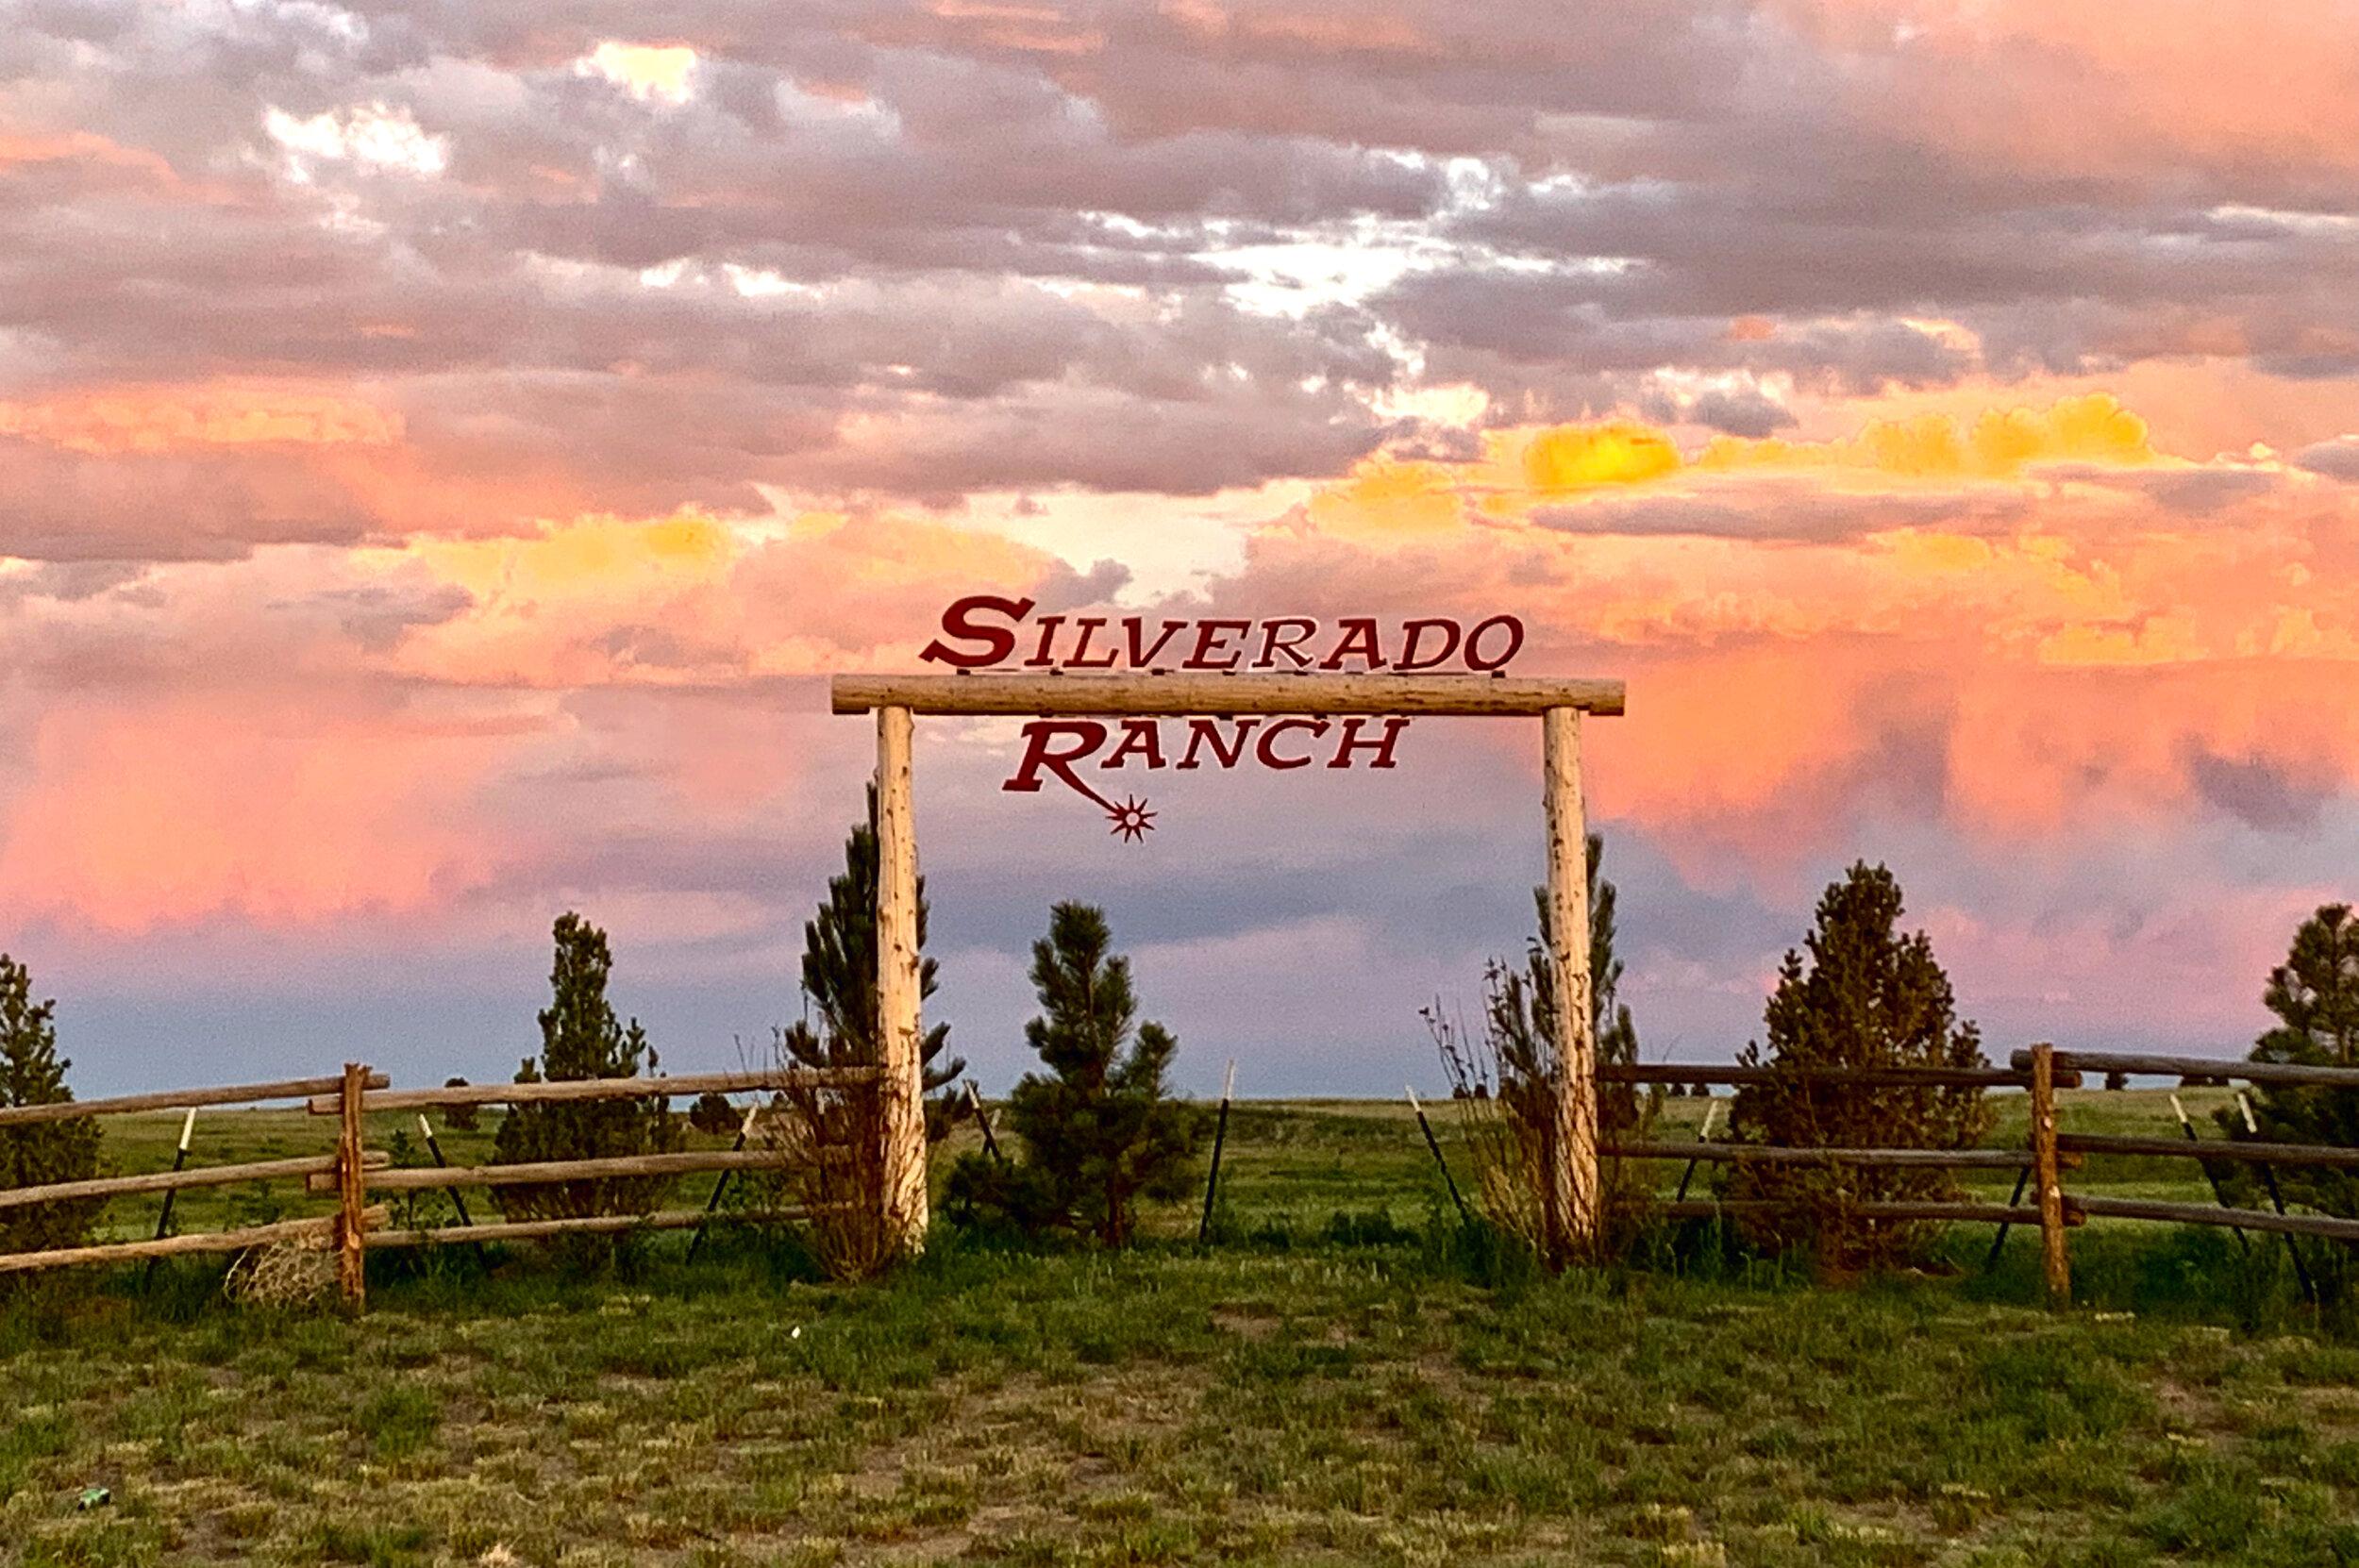 Silverado Ranch